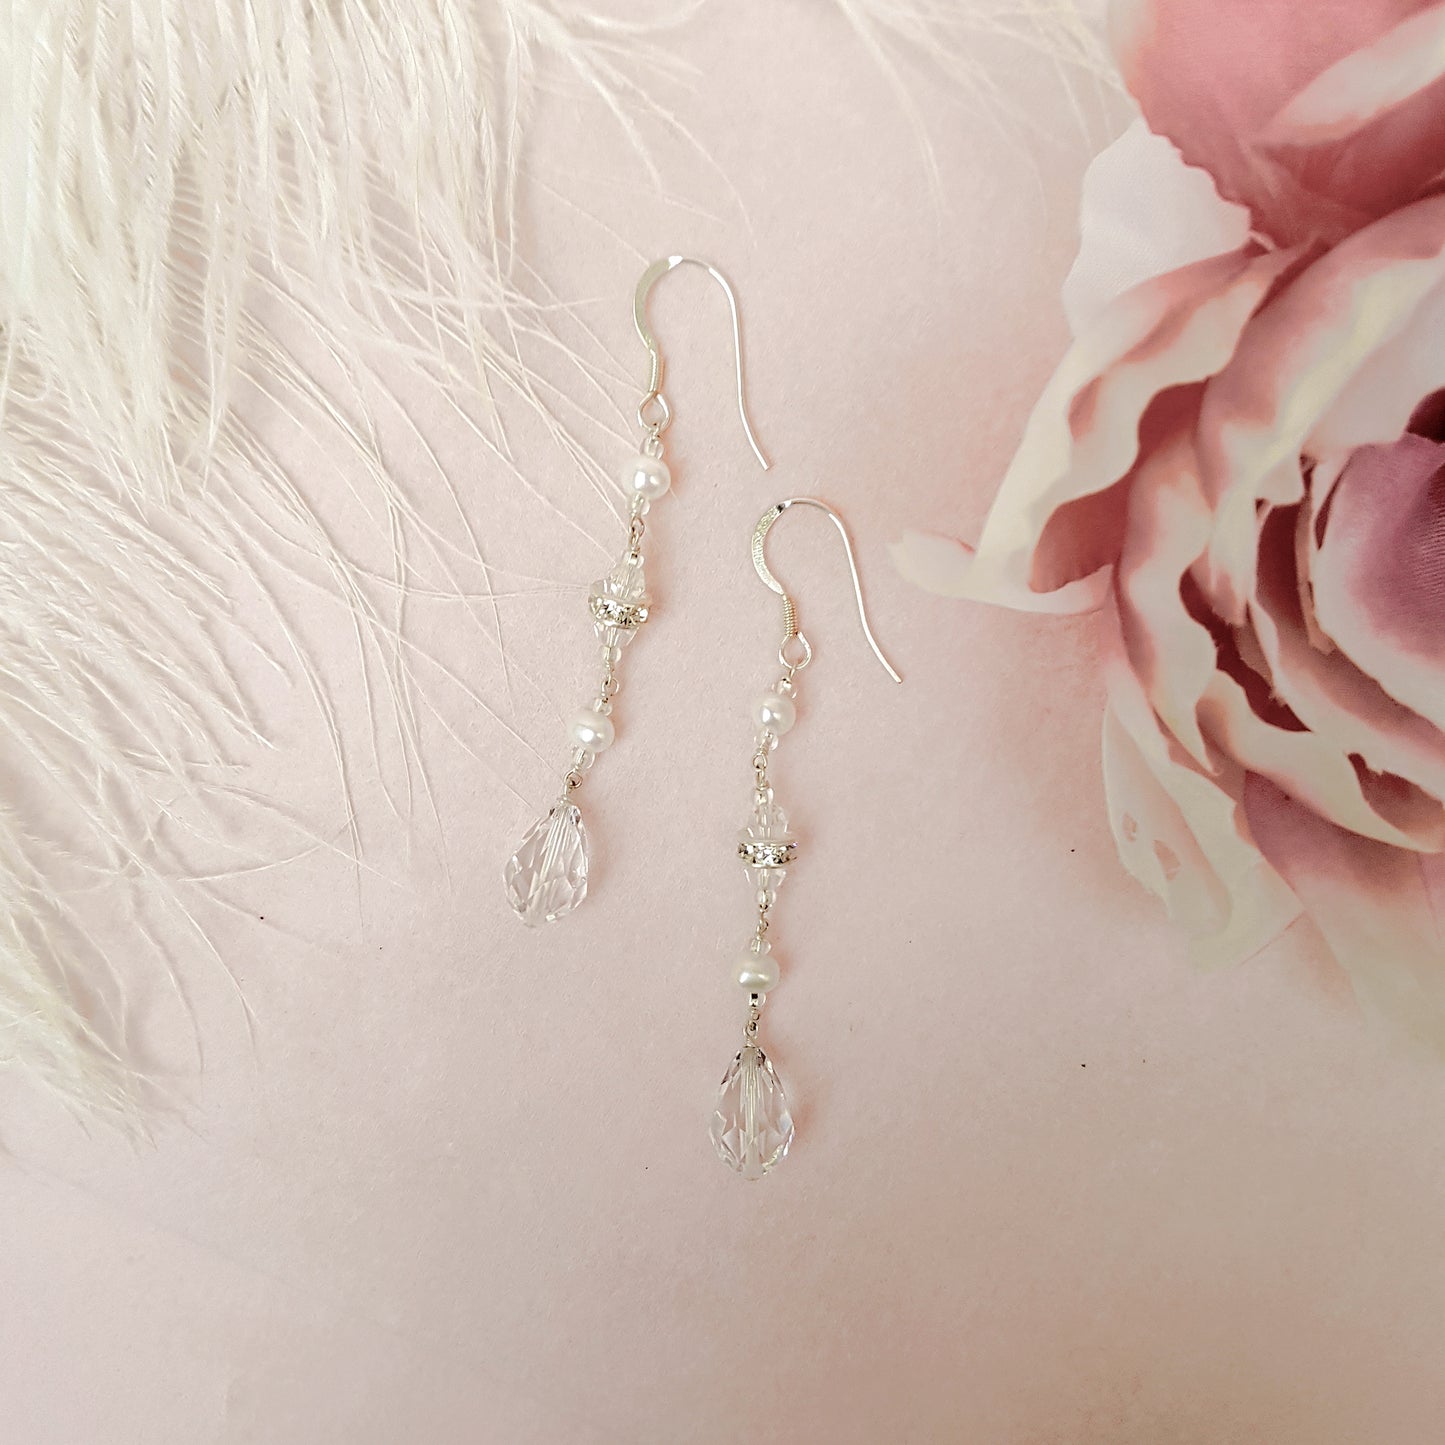 Lovely Crystal & Pearl Bridal Earrings